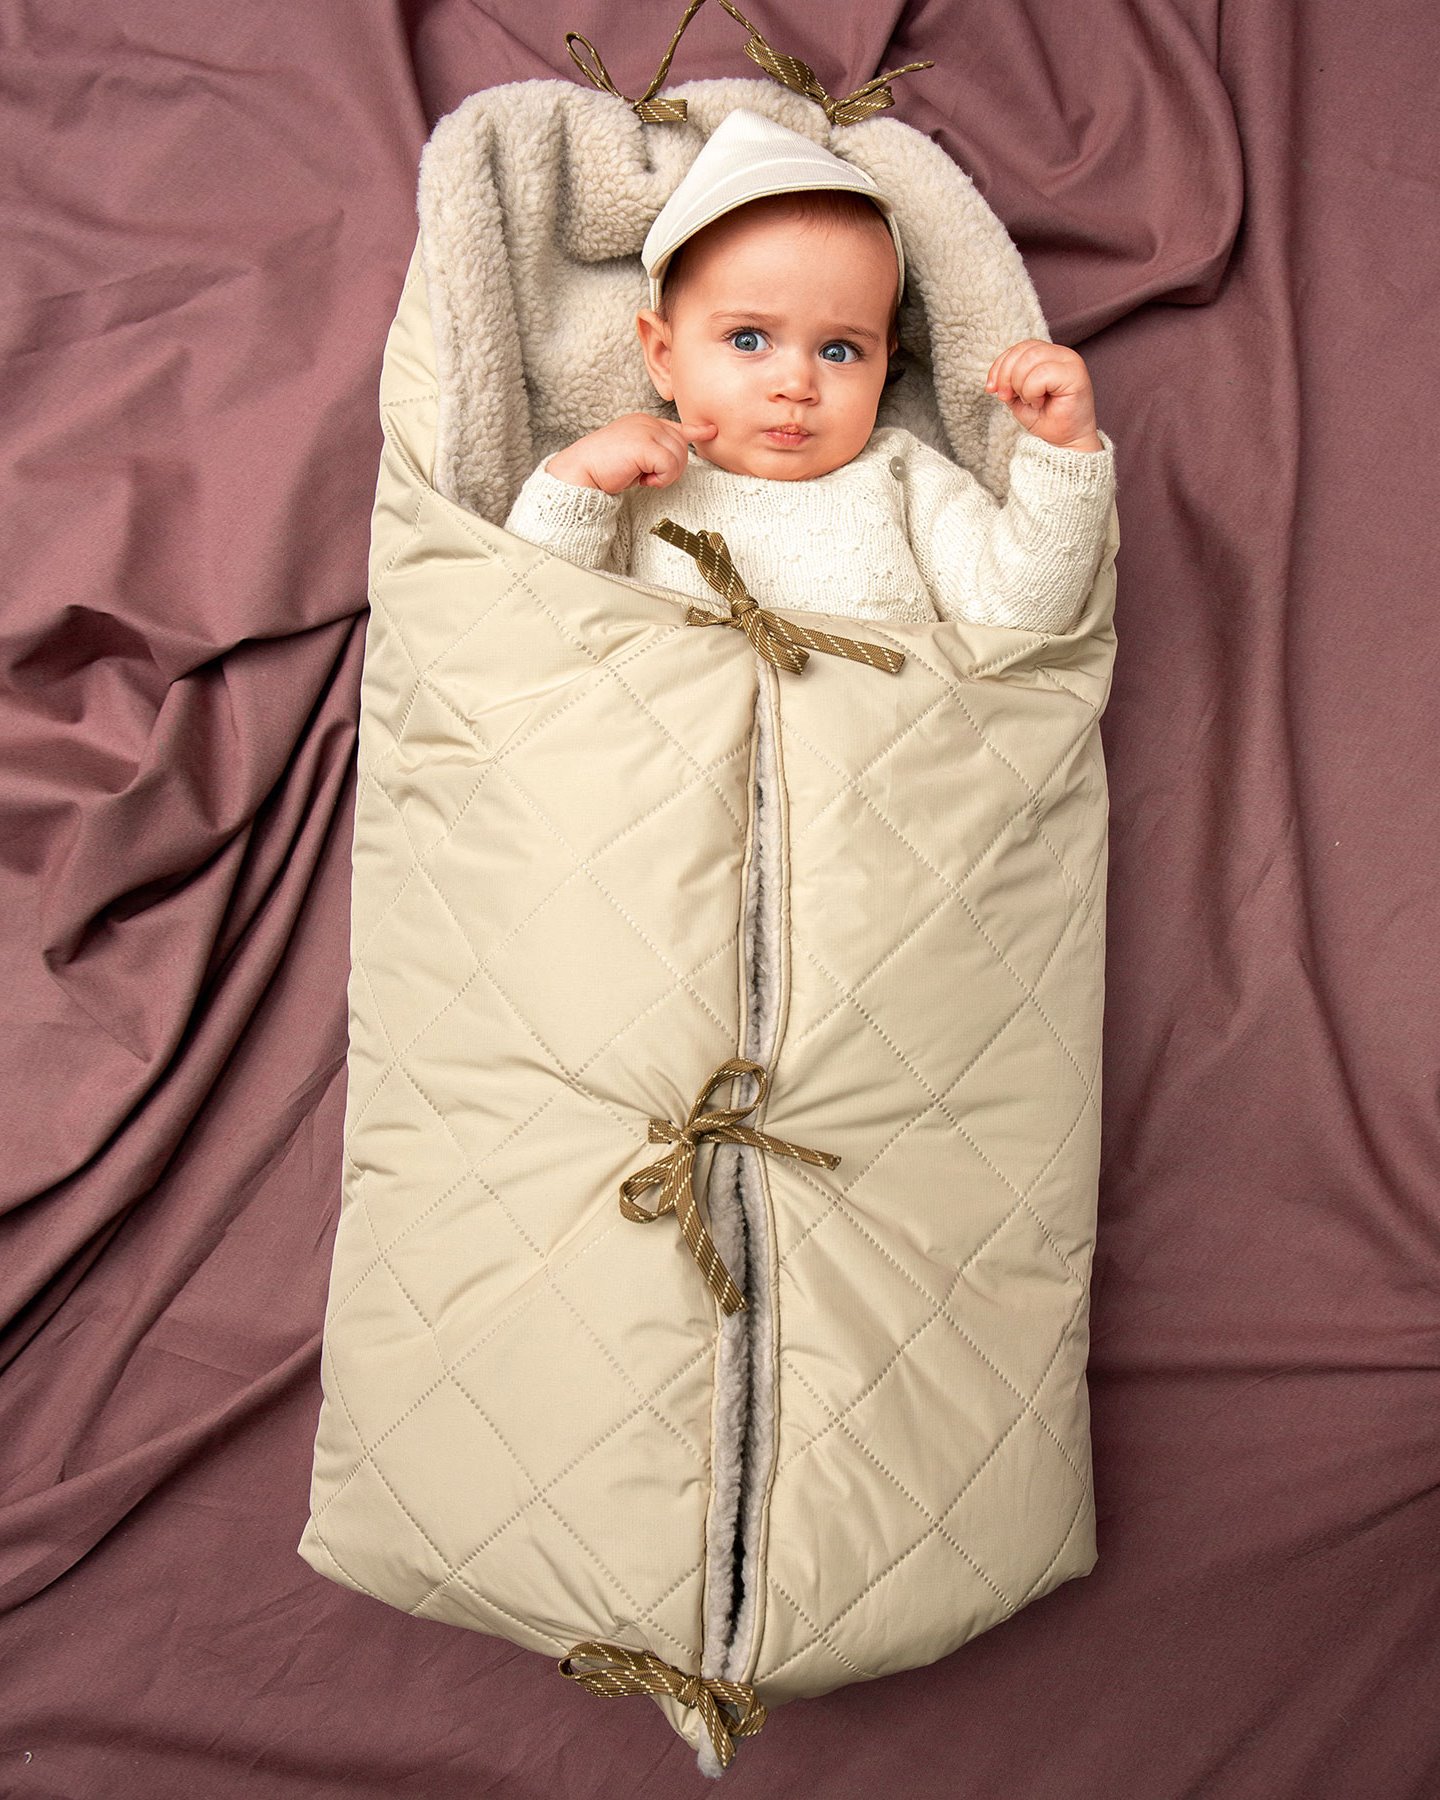 Der weichste Schlafsack für Babys SELFMADE0296_SS23_1450x1800.jpg